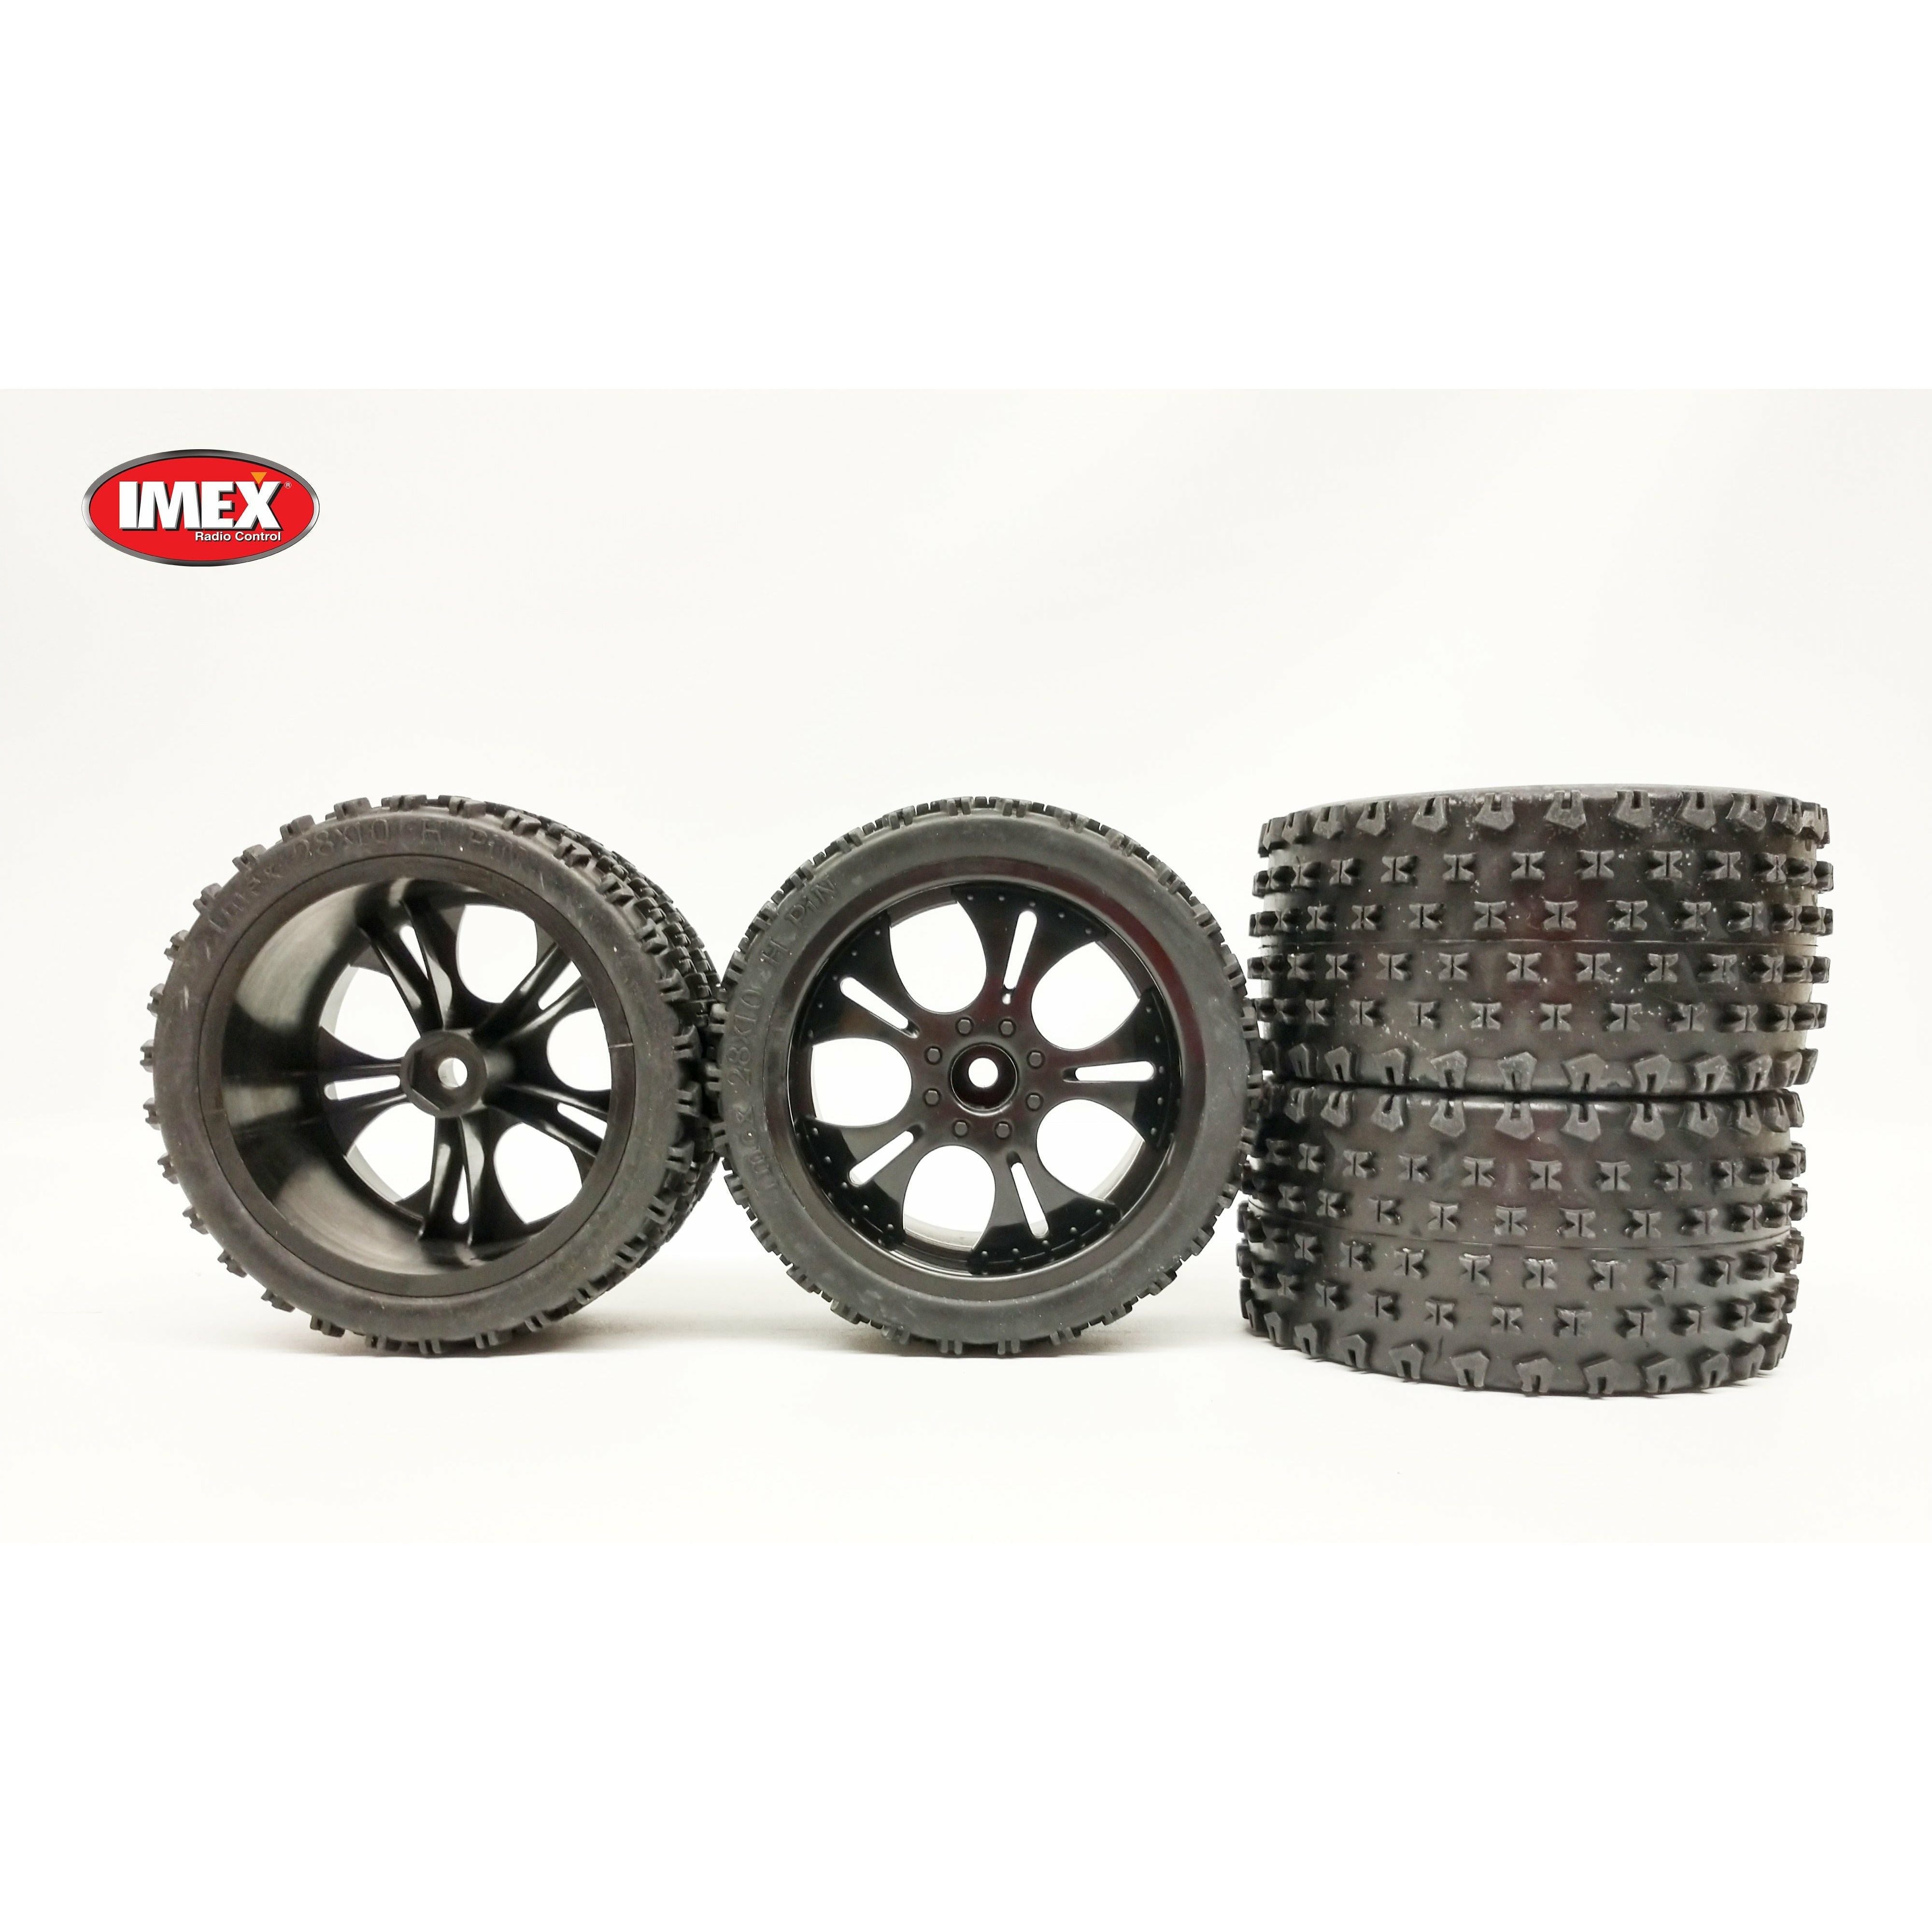 IMEX 2.8 H-Pin Tires & Falcon Rims (1 Pair)